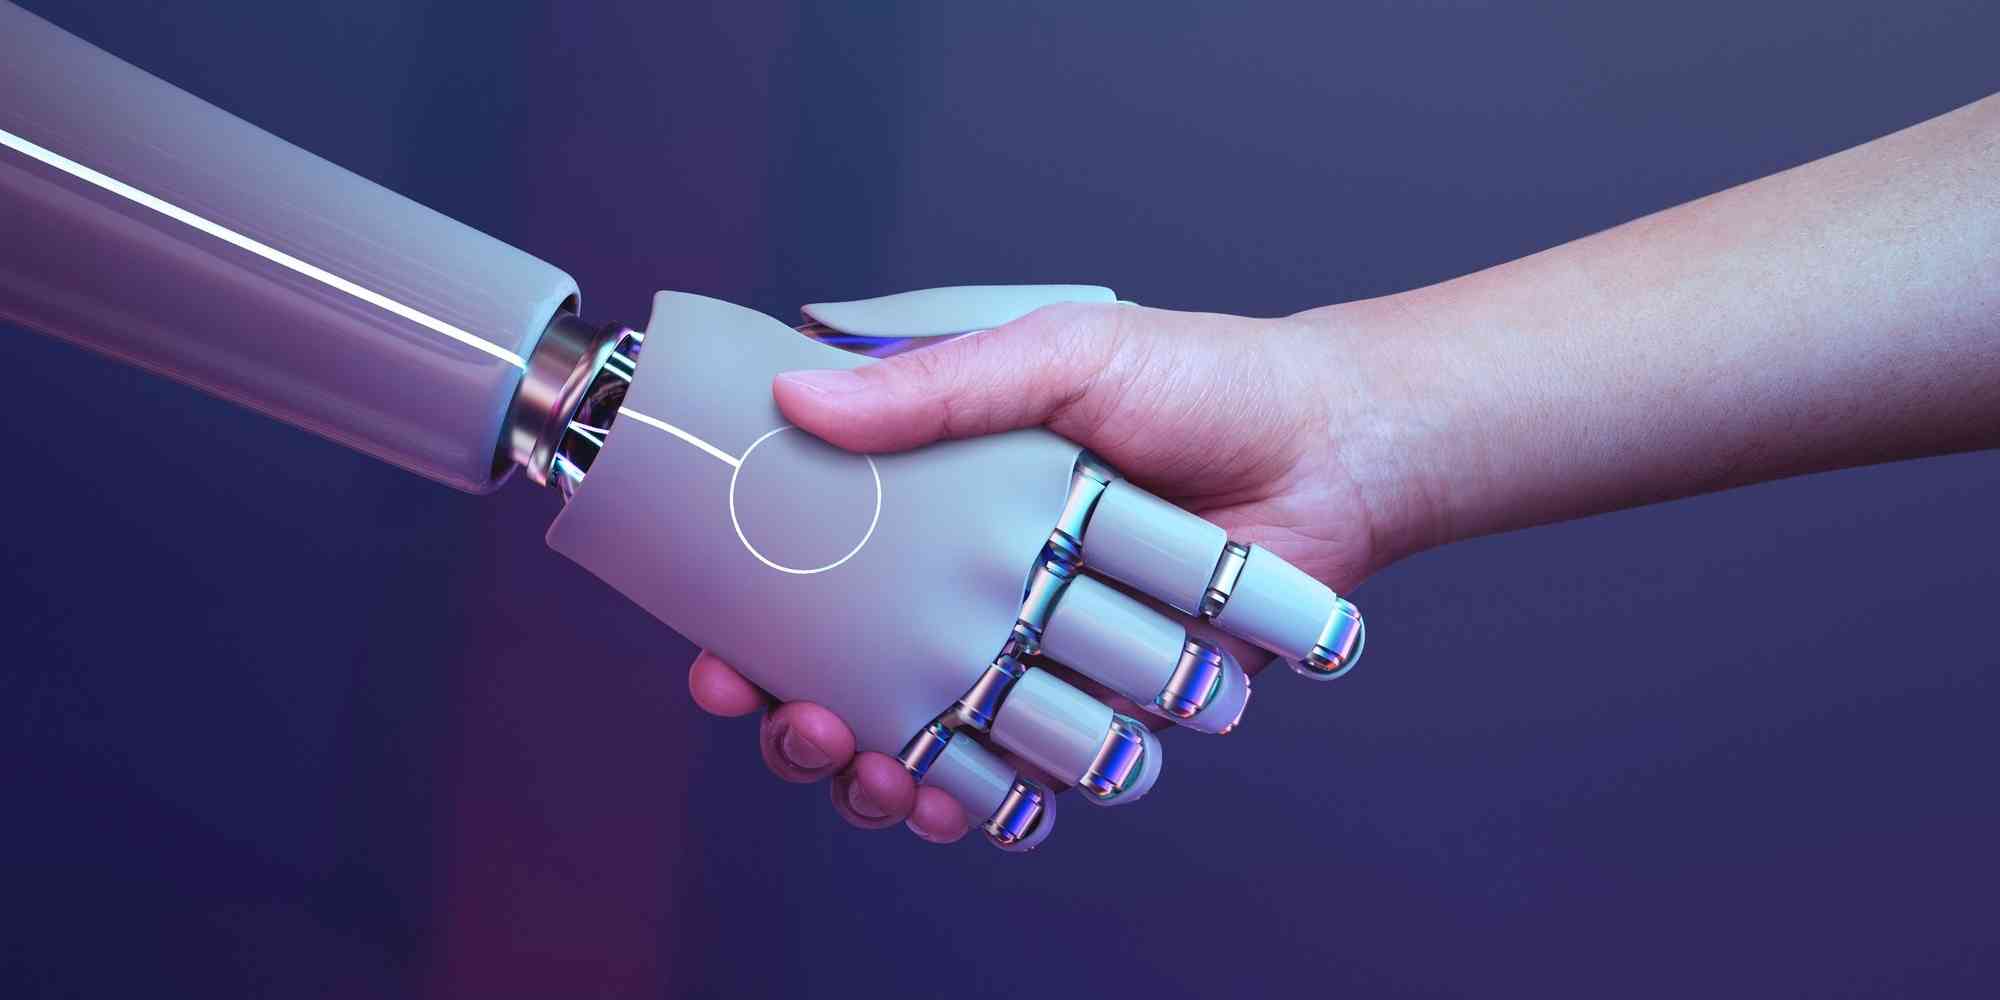 两个机器人握手，代表人类和机器之间的合作与互动。在科技迅速发展的时代里，人工智能正在改变着我们的生活方式和工作方式。它们能够执行各种任务，为人类创造更多的便利、效率和收益。